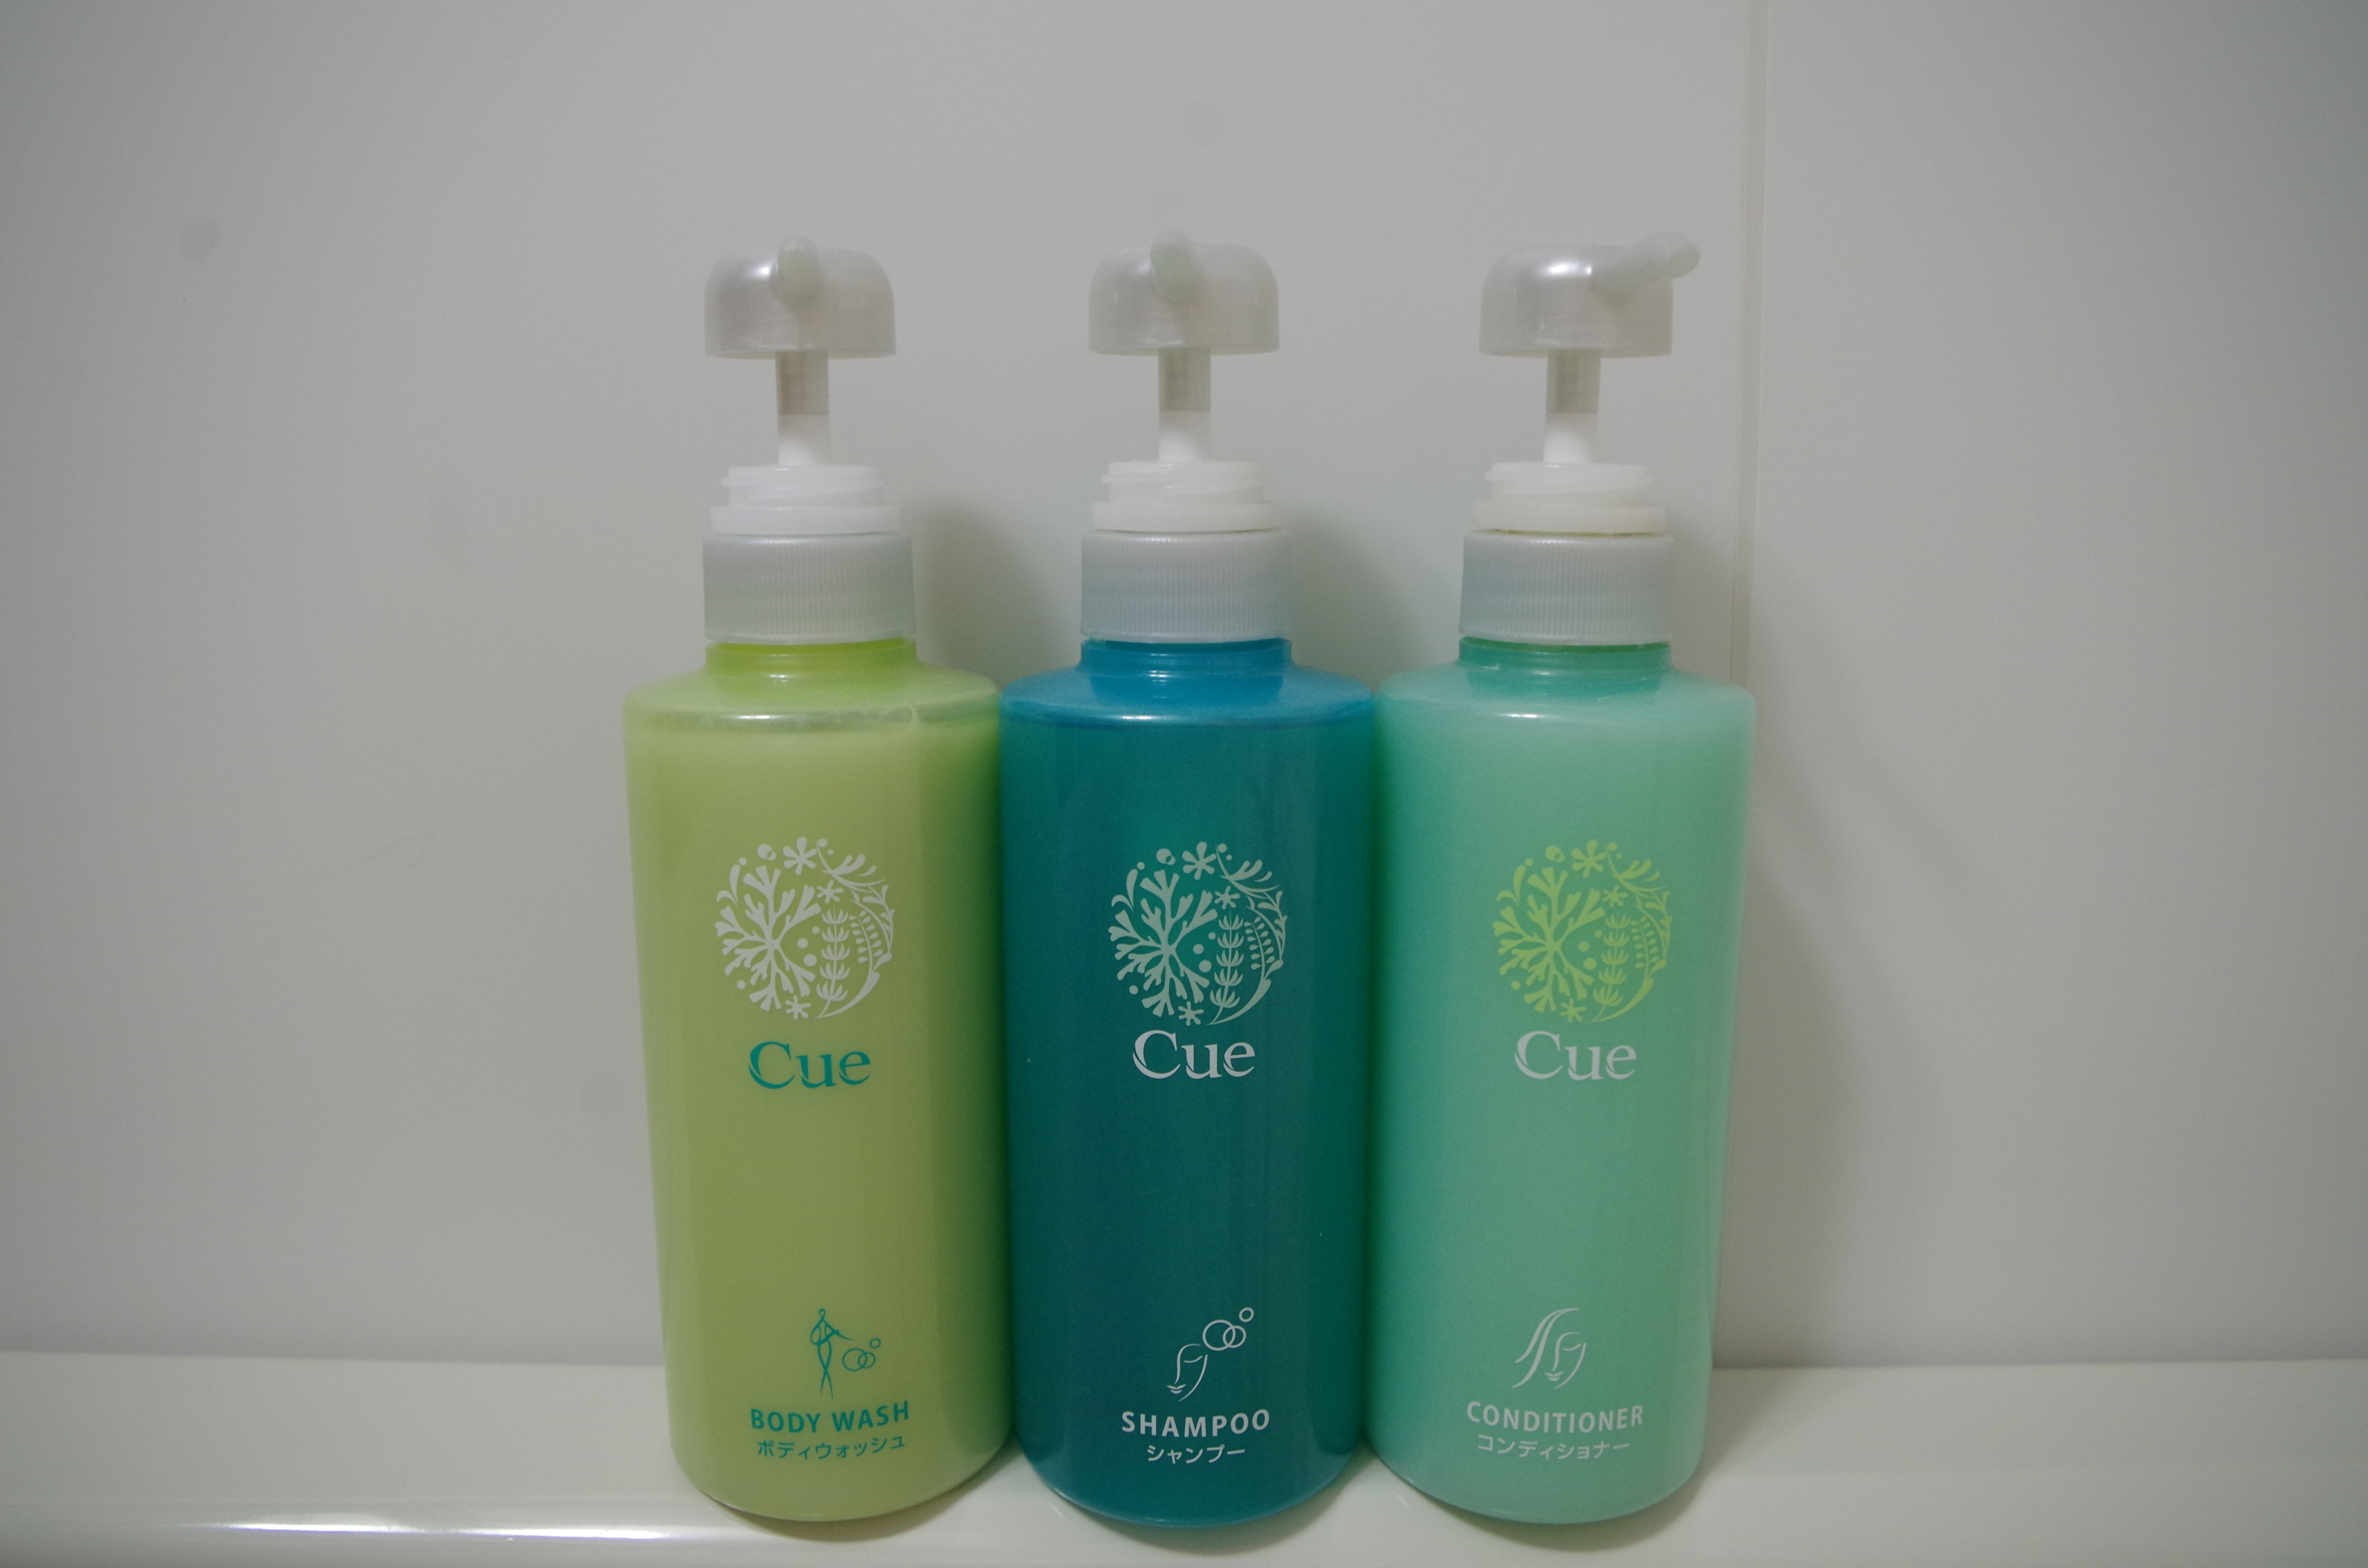 Shampoo, conditioner, body soap